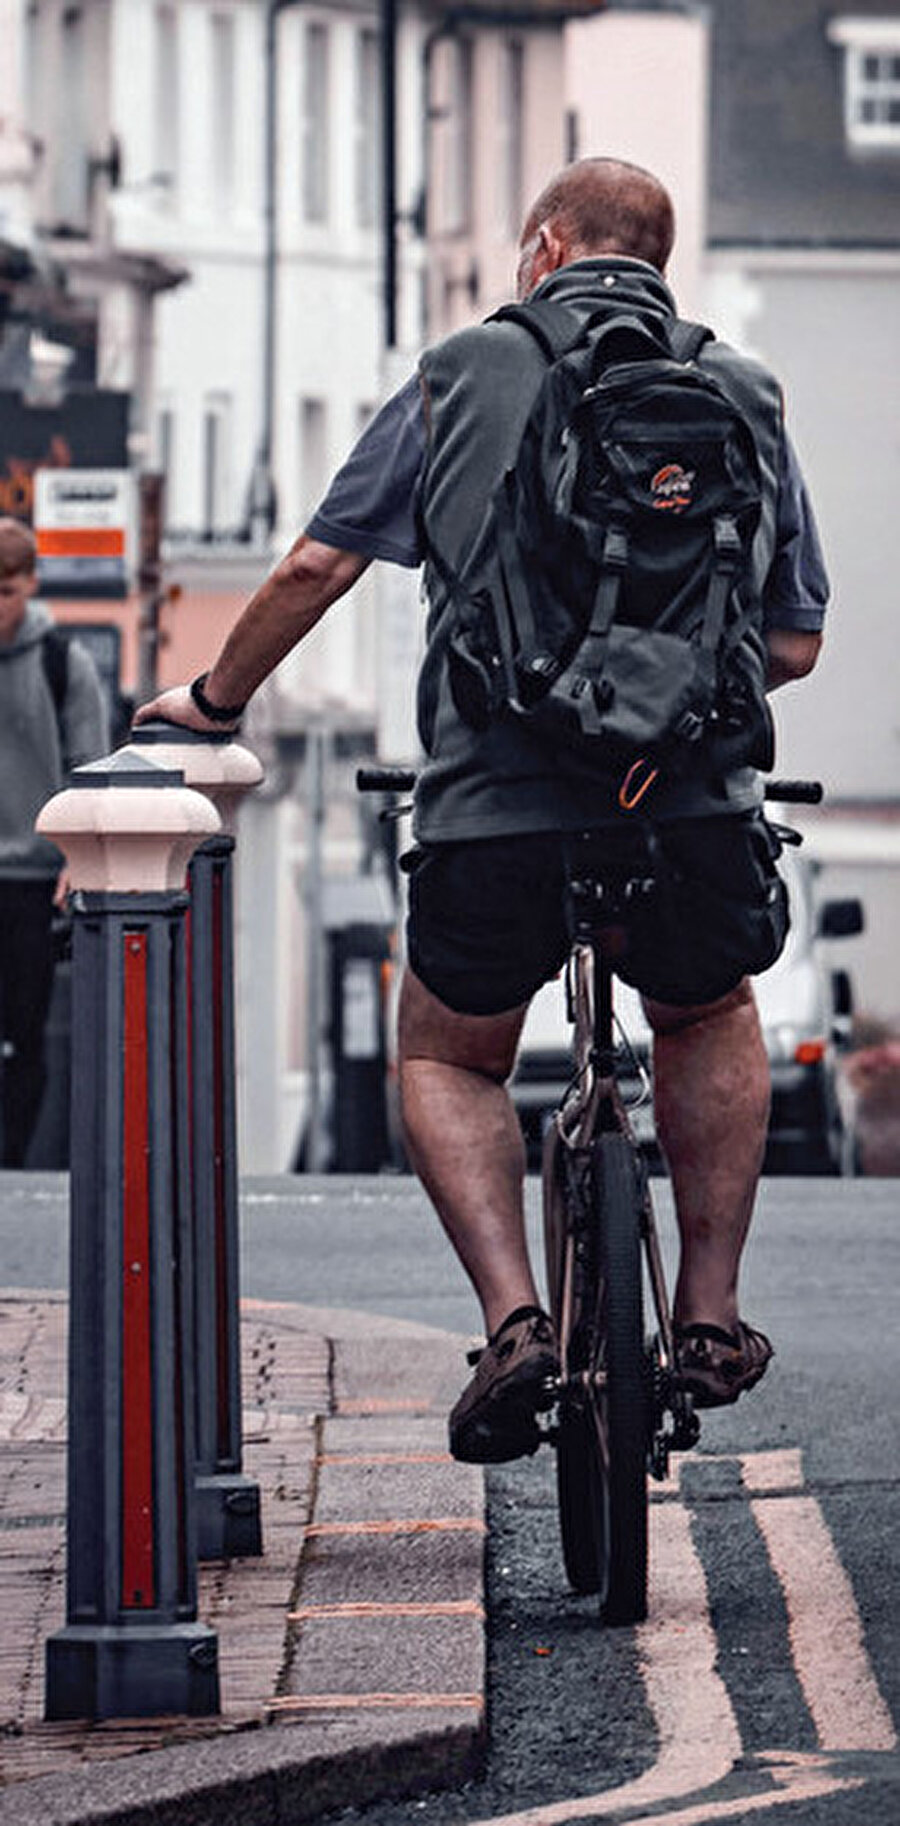 İngiltere’de bisiklet kullanıcılarının ışık, reflektör ve fren bakımı yaptırması zorunludur.